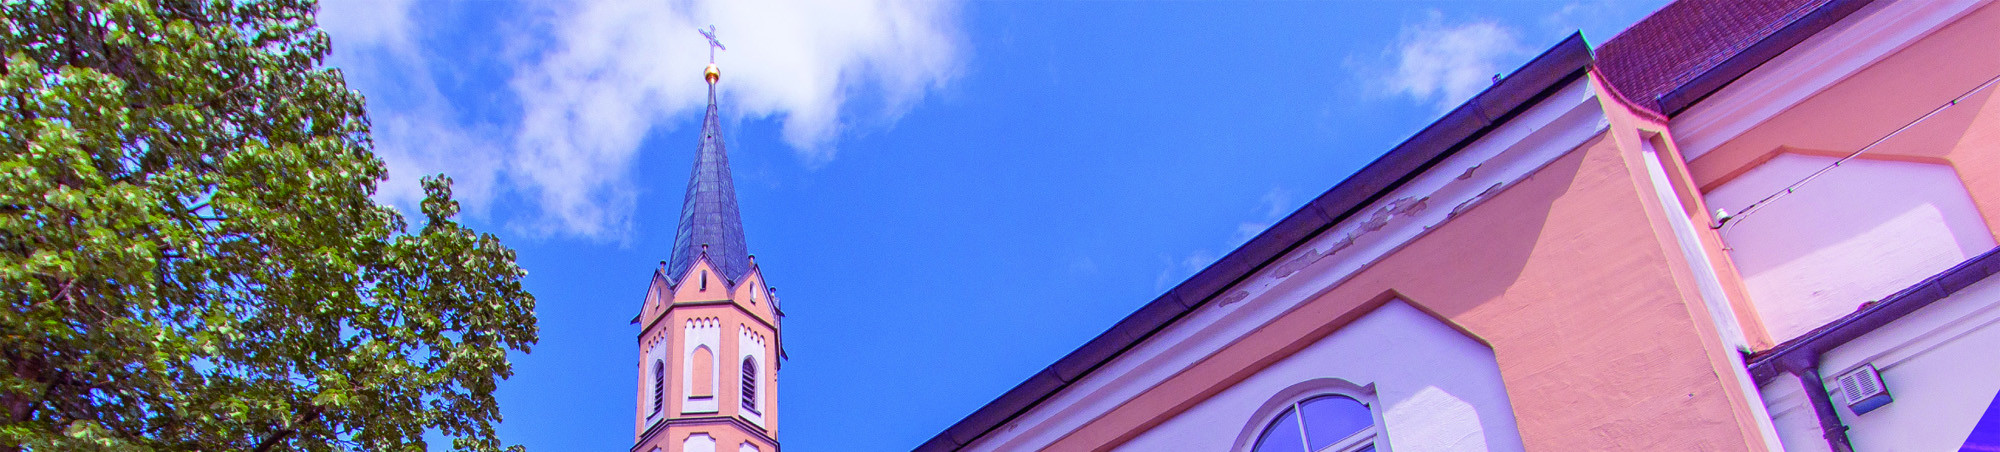 Ausschnitt eines Fotos von St. Salvator aus der Froschperspektive vor strahlend blauem Himmel